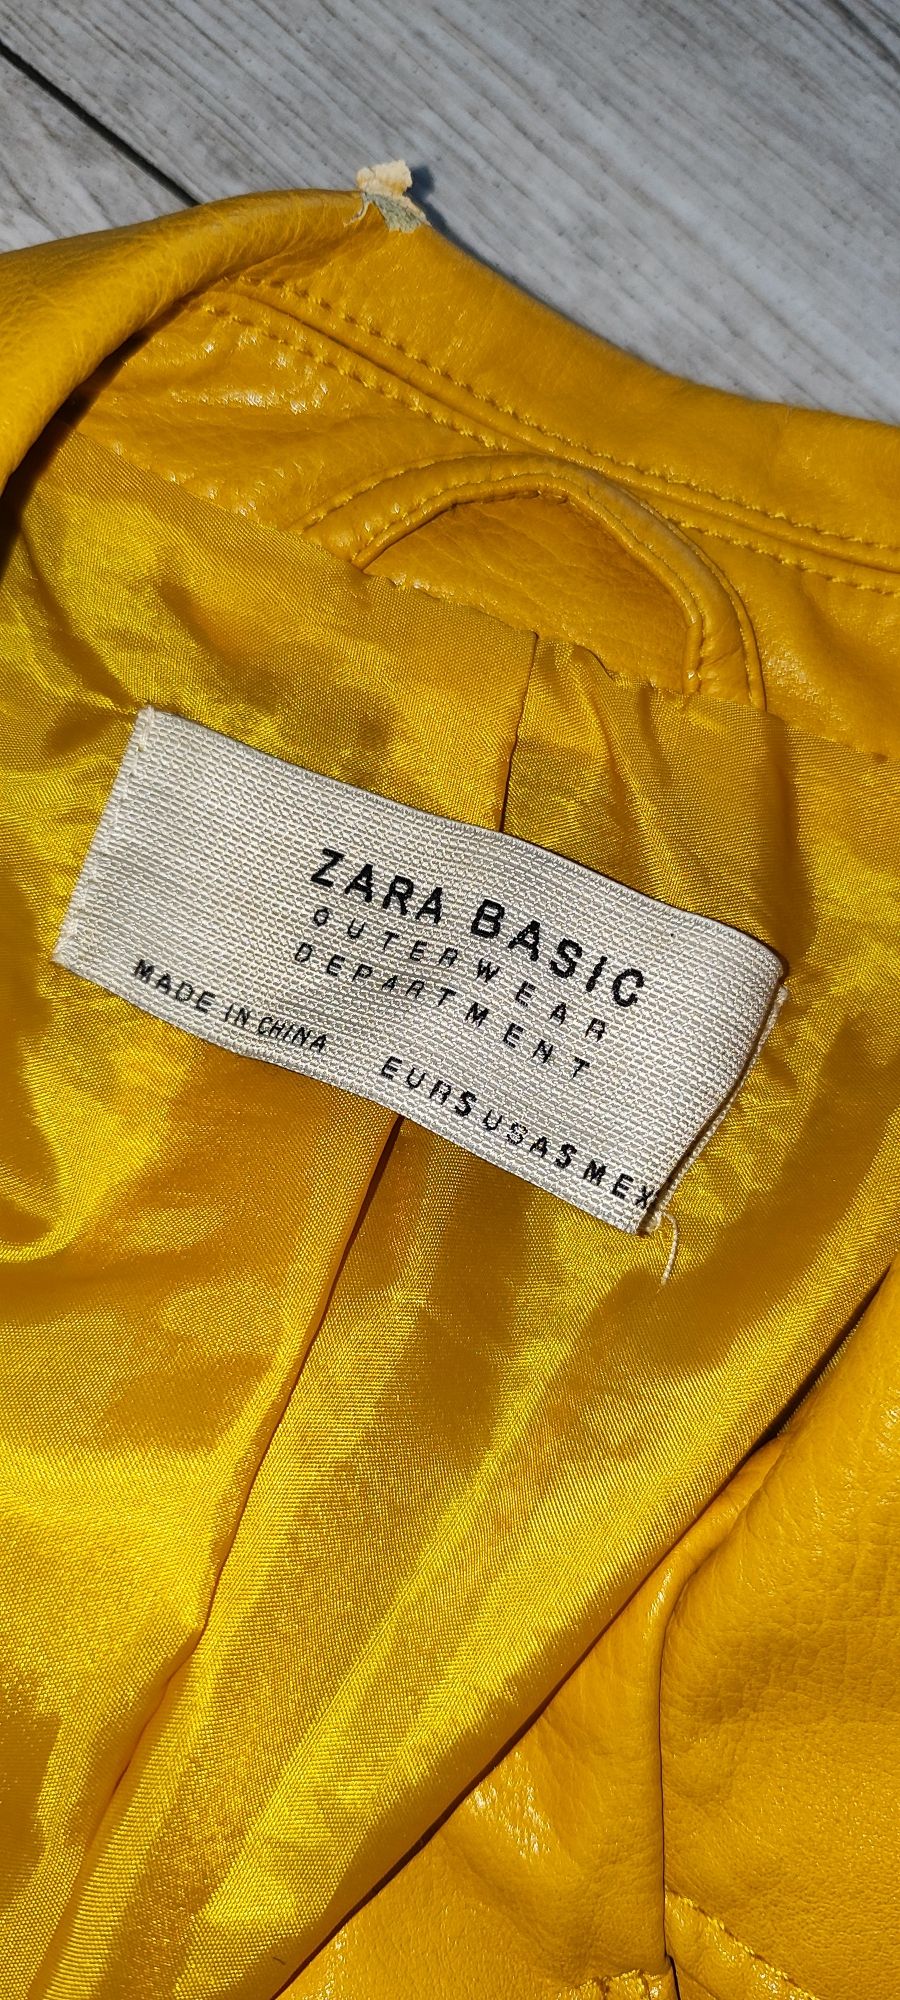 Śliczna skórzana ramoneska kurtka damska Zara Basic. Rozmiar 36/S.